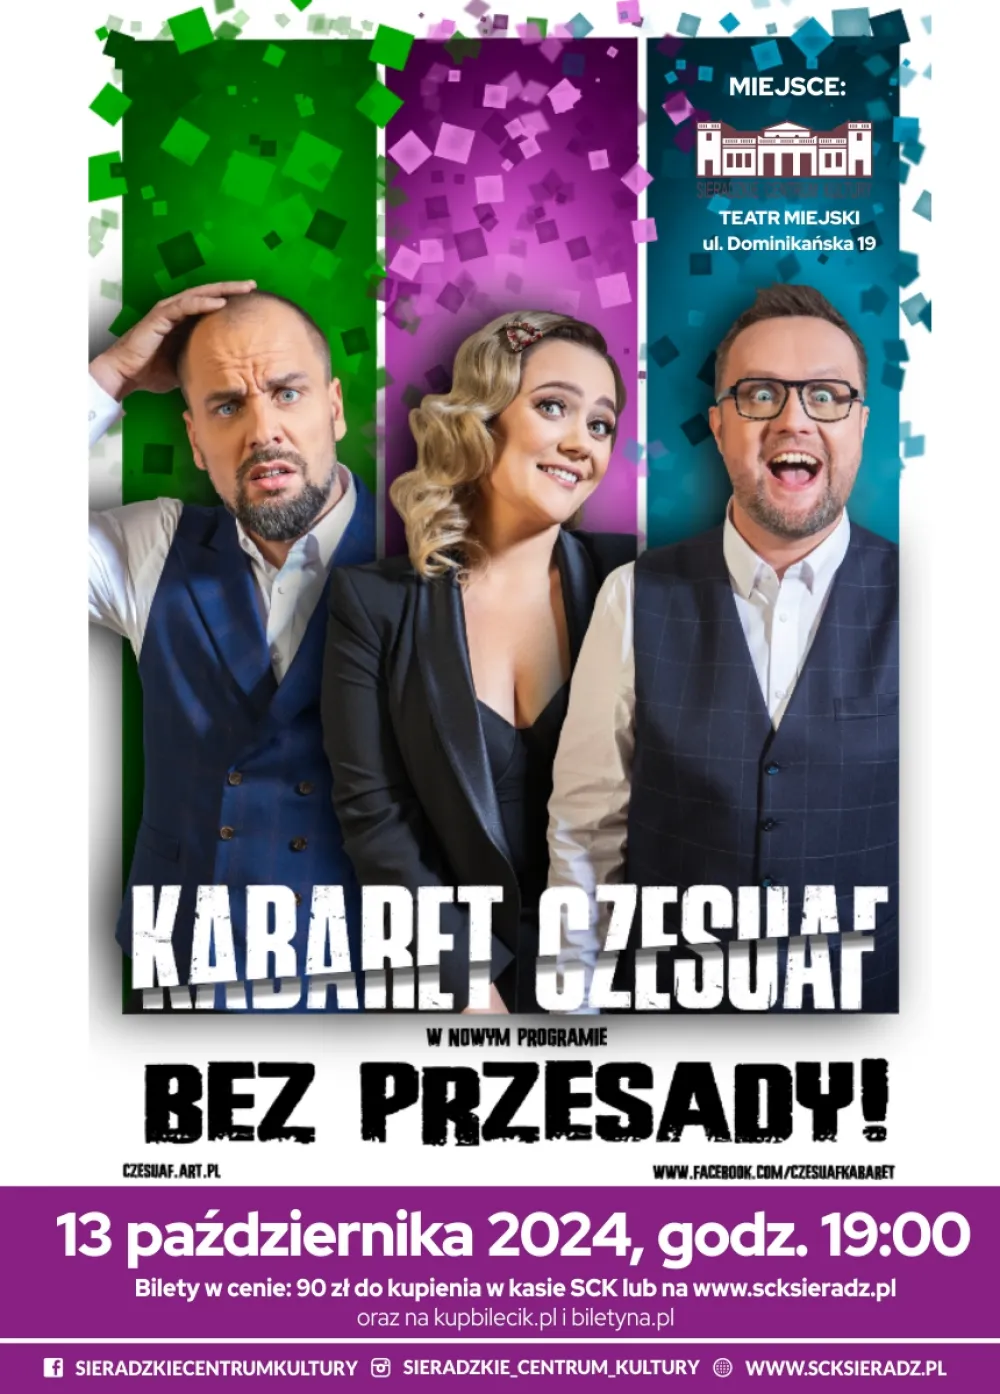 Kabaret CZESUAF w programie „Bez przesady!”